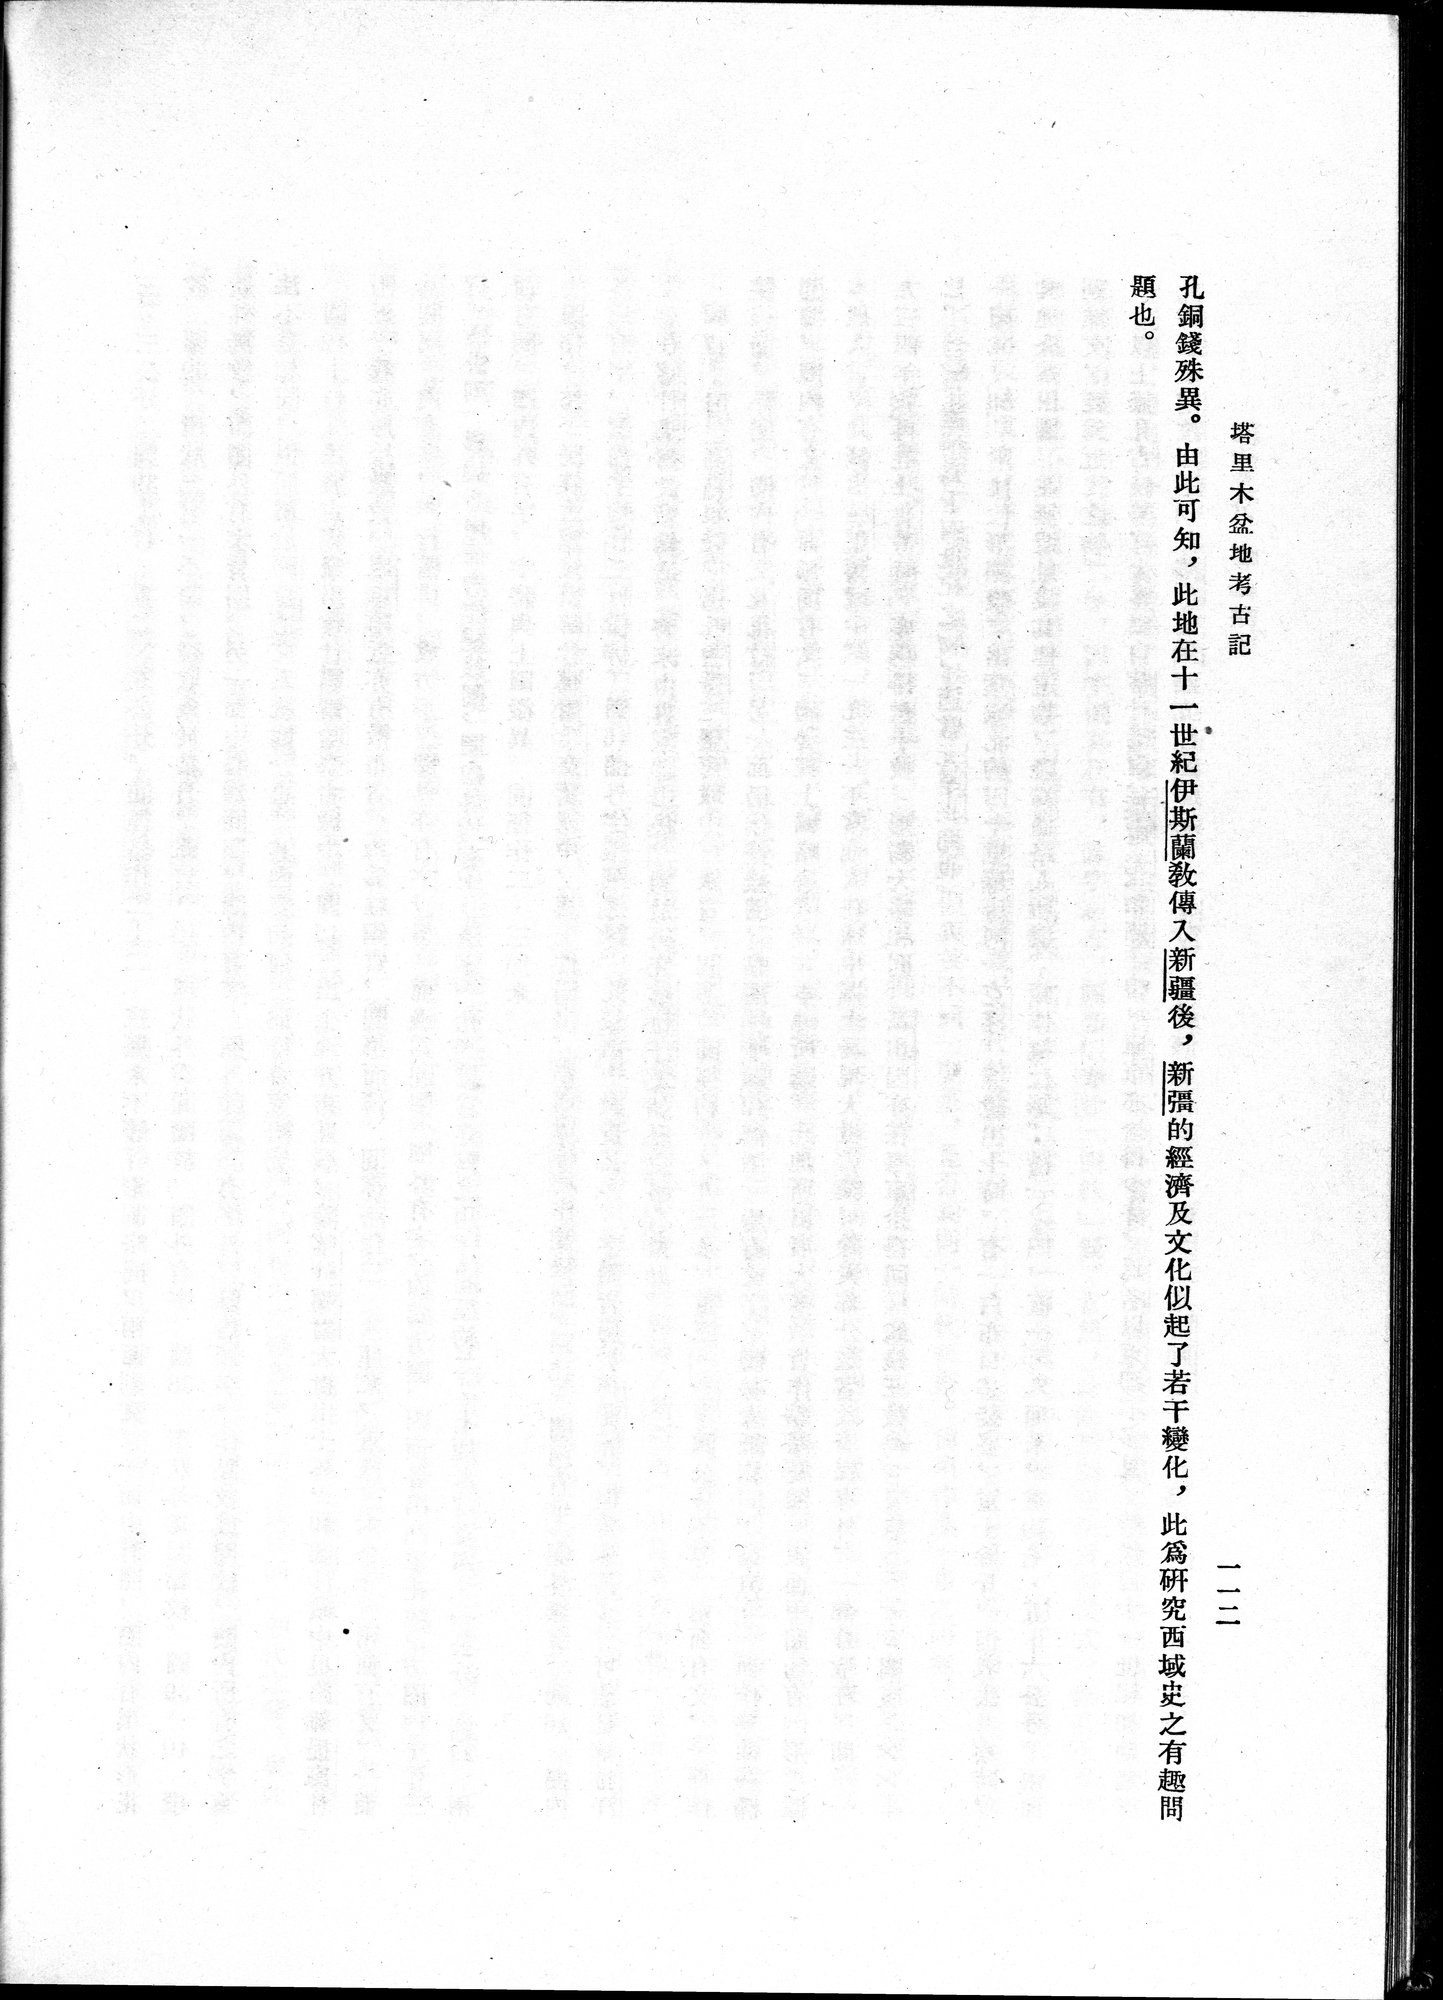 塔里木盆地考古記 : vol.1 / 176 ページ（白黒高解像度画像）